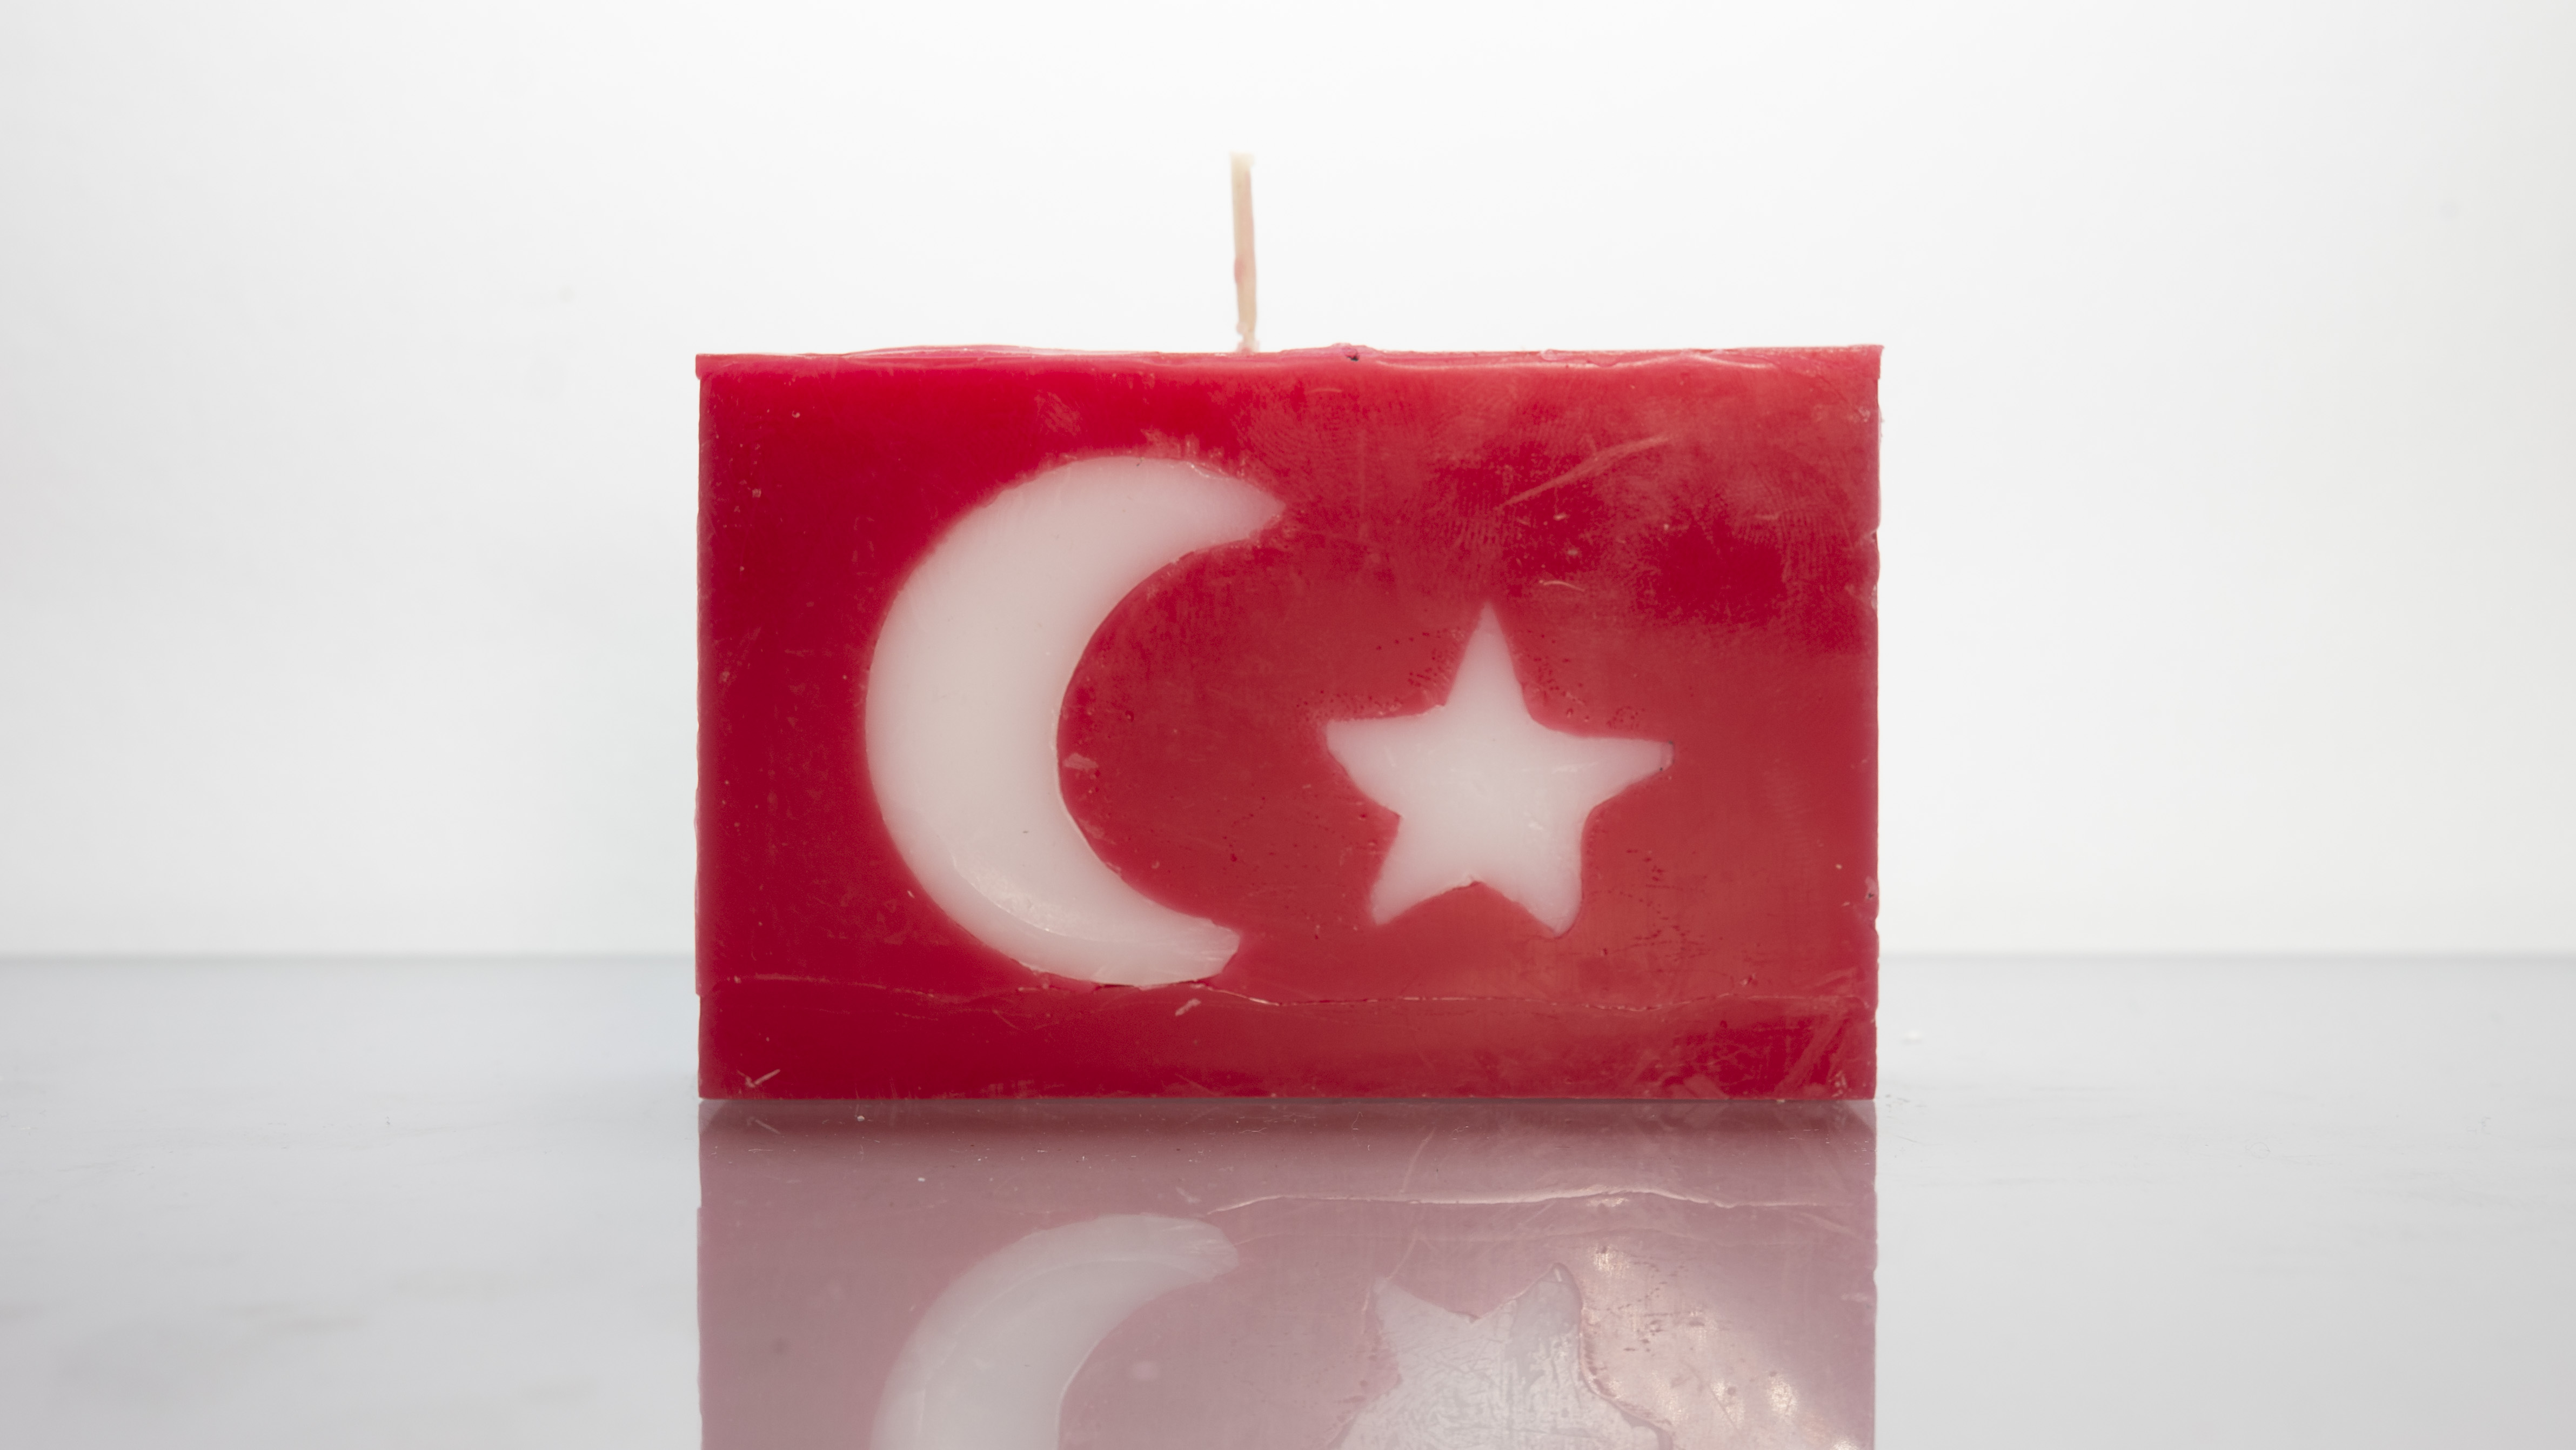 burn-a-flag: Turkey